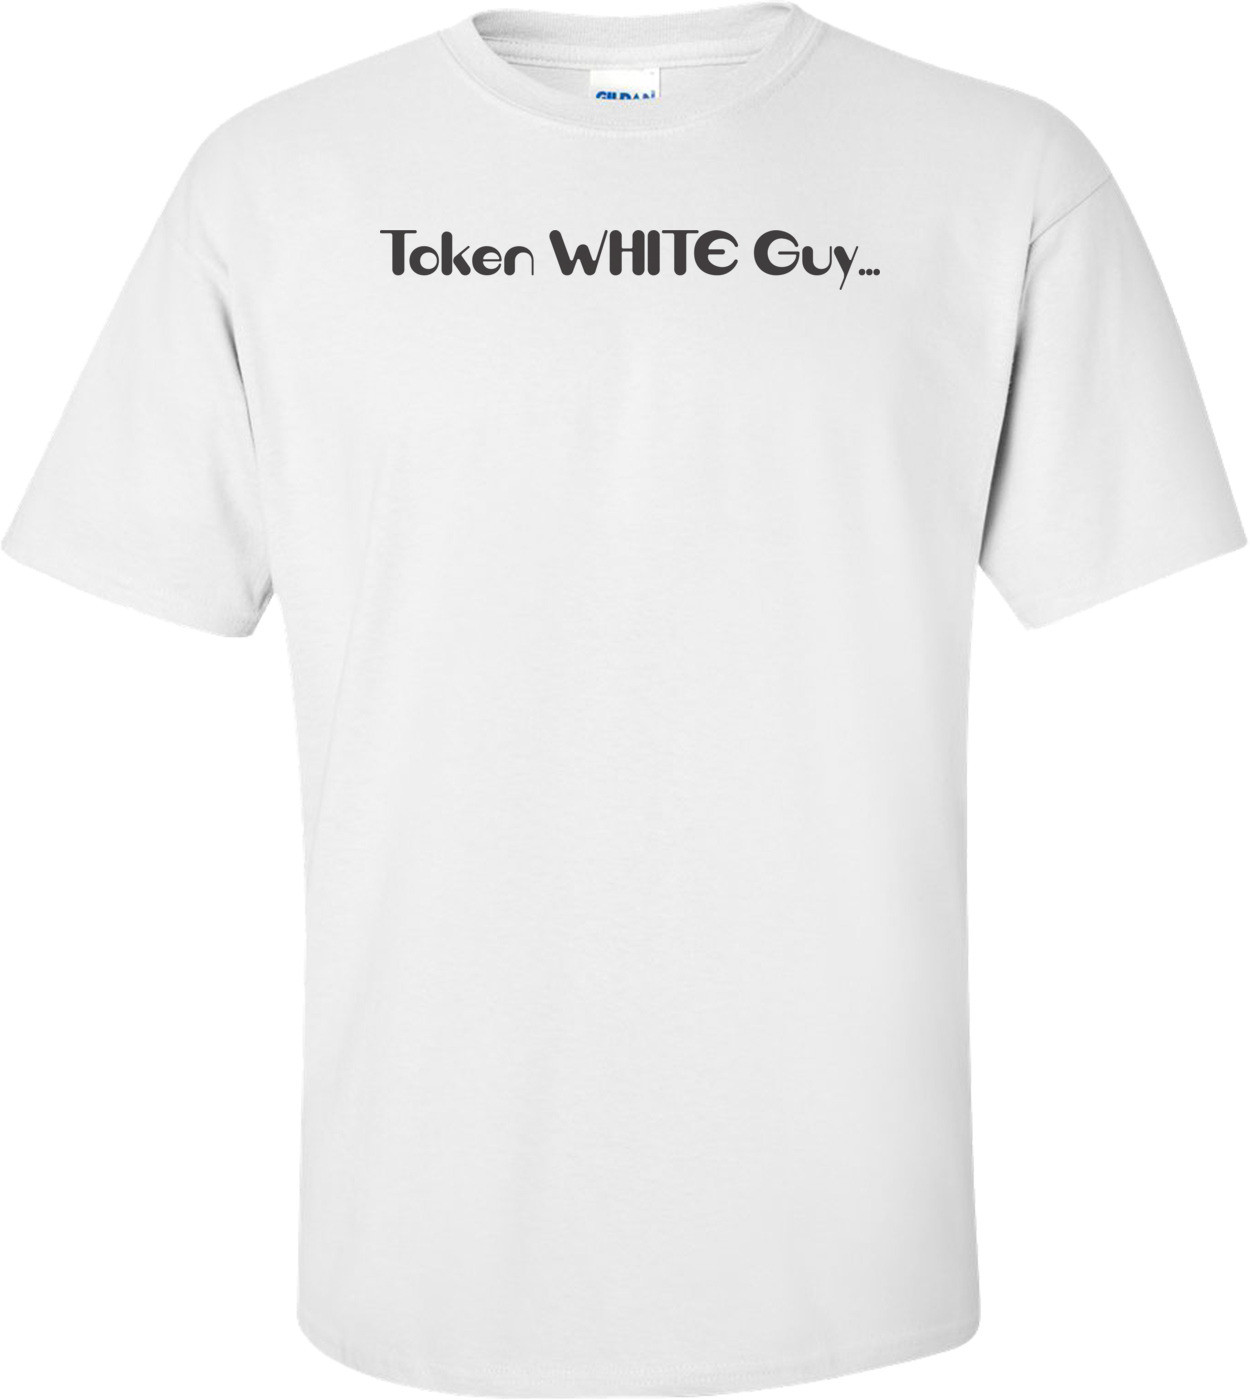 Token White Guy T-shirt